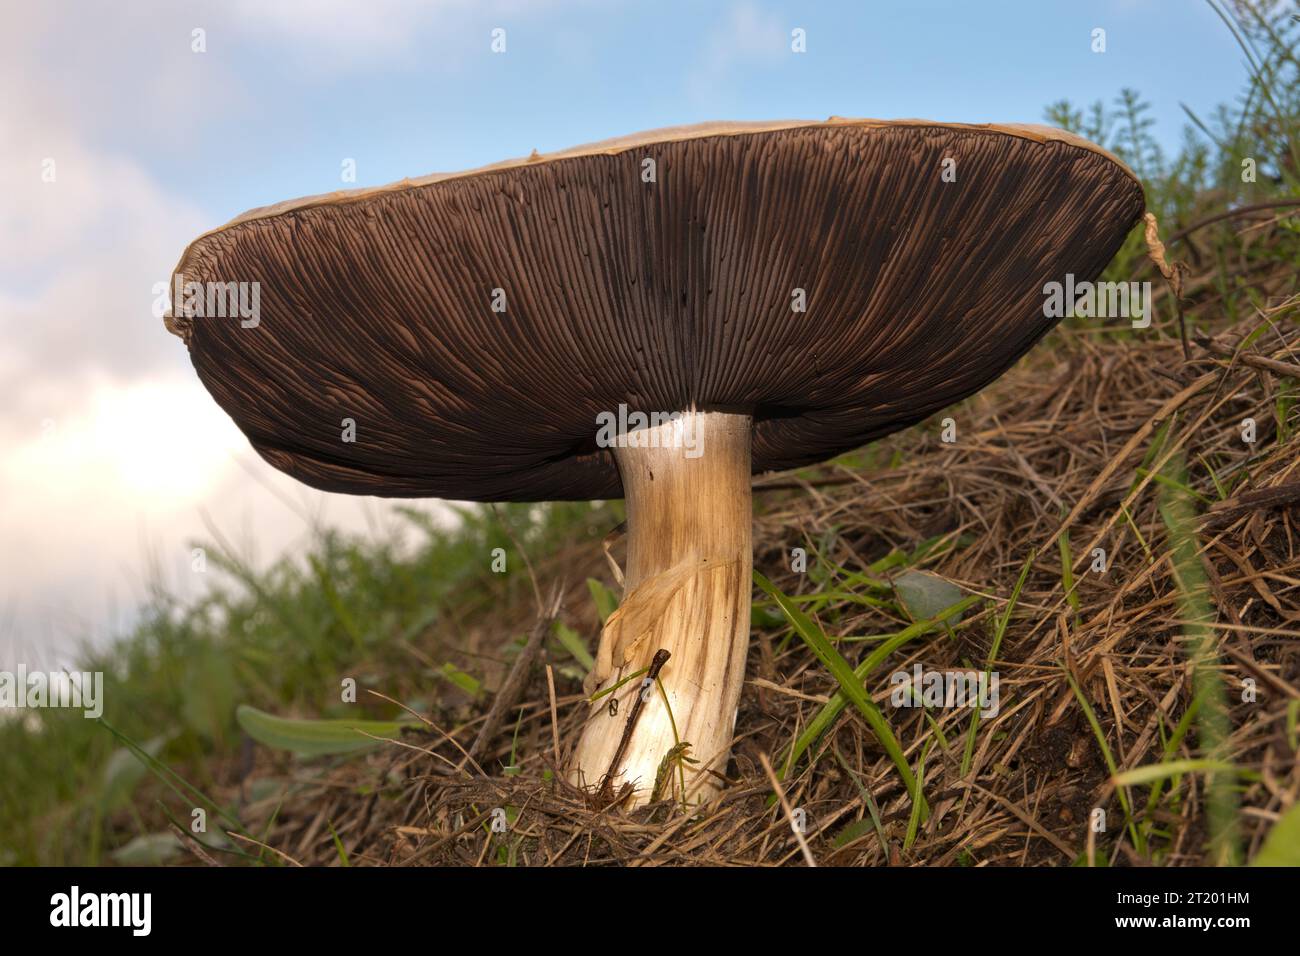 Feldpilz, ein großer, essbarer Pilz mit einer weißen Kappe, aus einer tiefen Perspektive gesehen Stockfoto